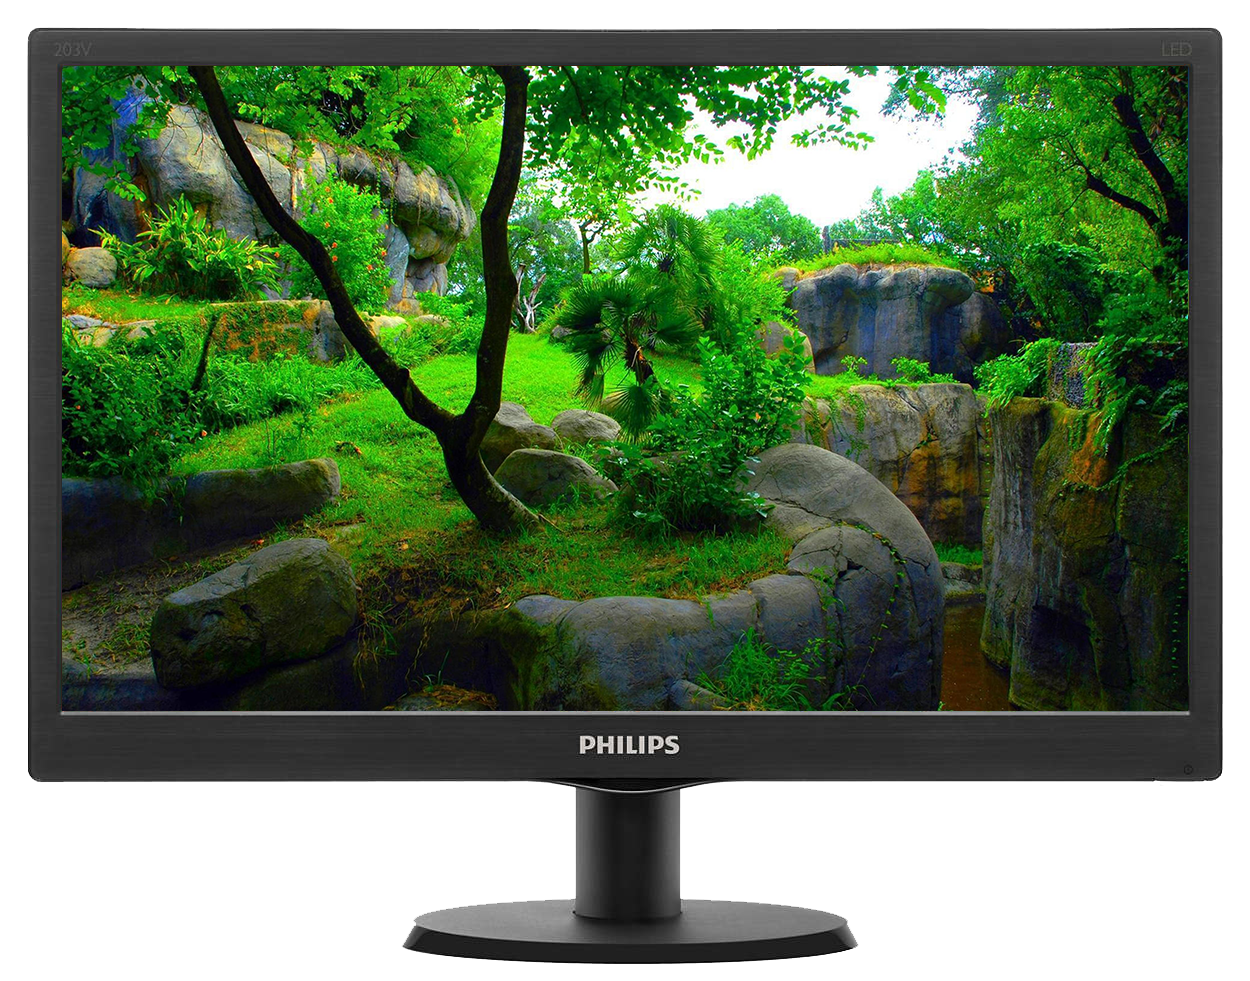 Филипс 18. Philips 203v. Монитор Philips 203v5l. Philips LCD Monitor 193v5lsb2. Philips 203v5 LCD.